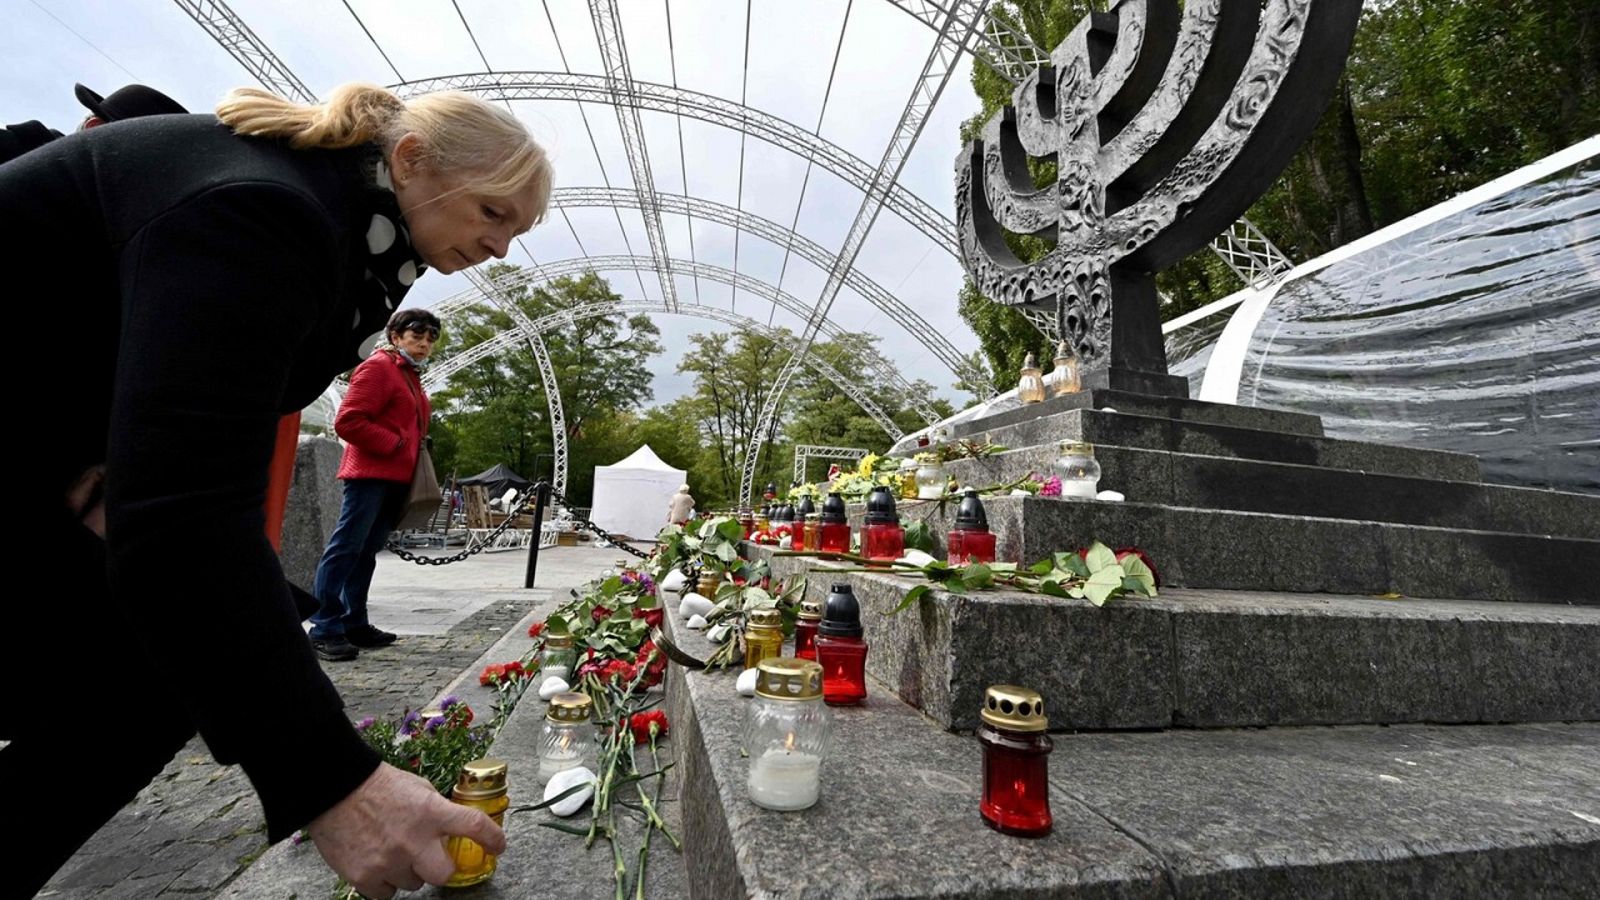 Varias personas colocan velas en un memorial por las víctimas del Holocausto en Kiev, el pasado 29 de septiembre, aniversario de la matanza de Babi Yar. Sergei SUPINSKY / AFP